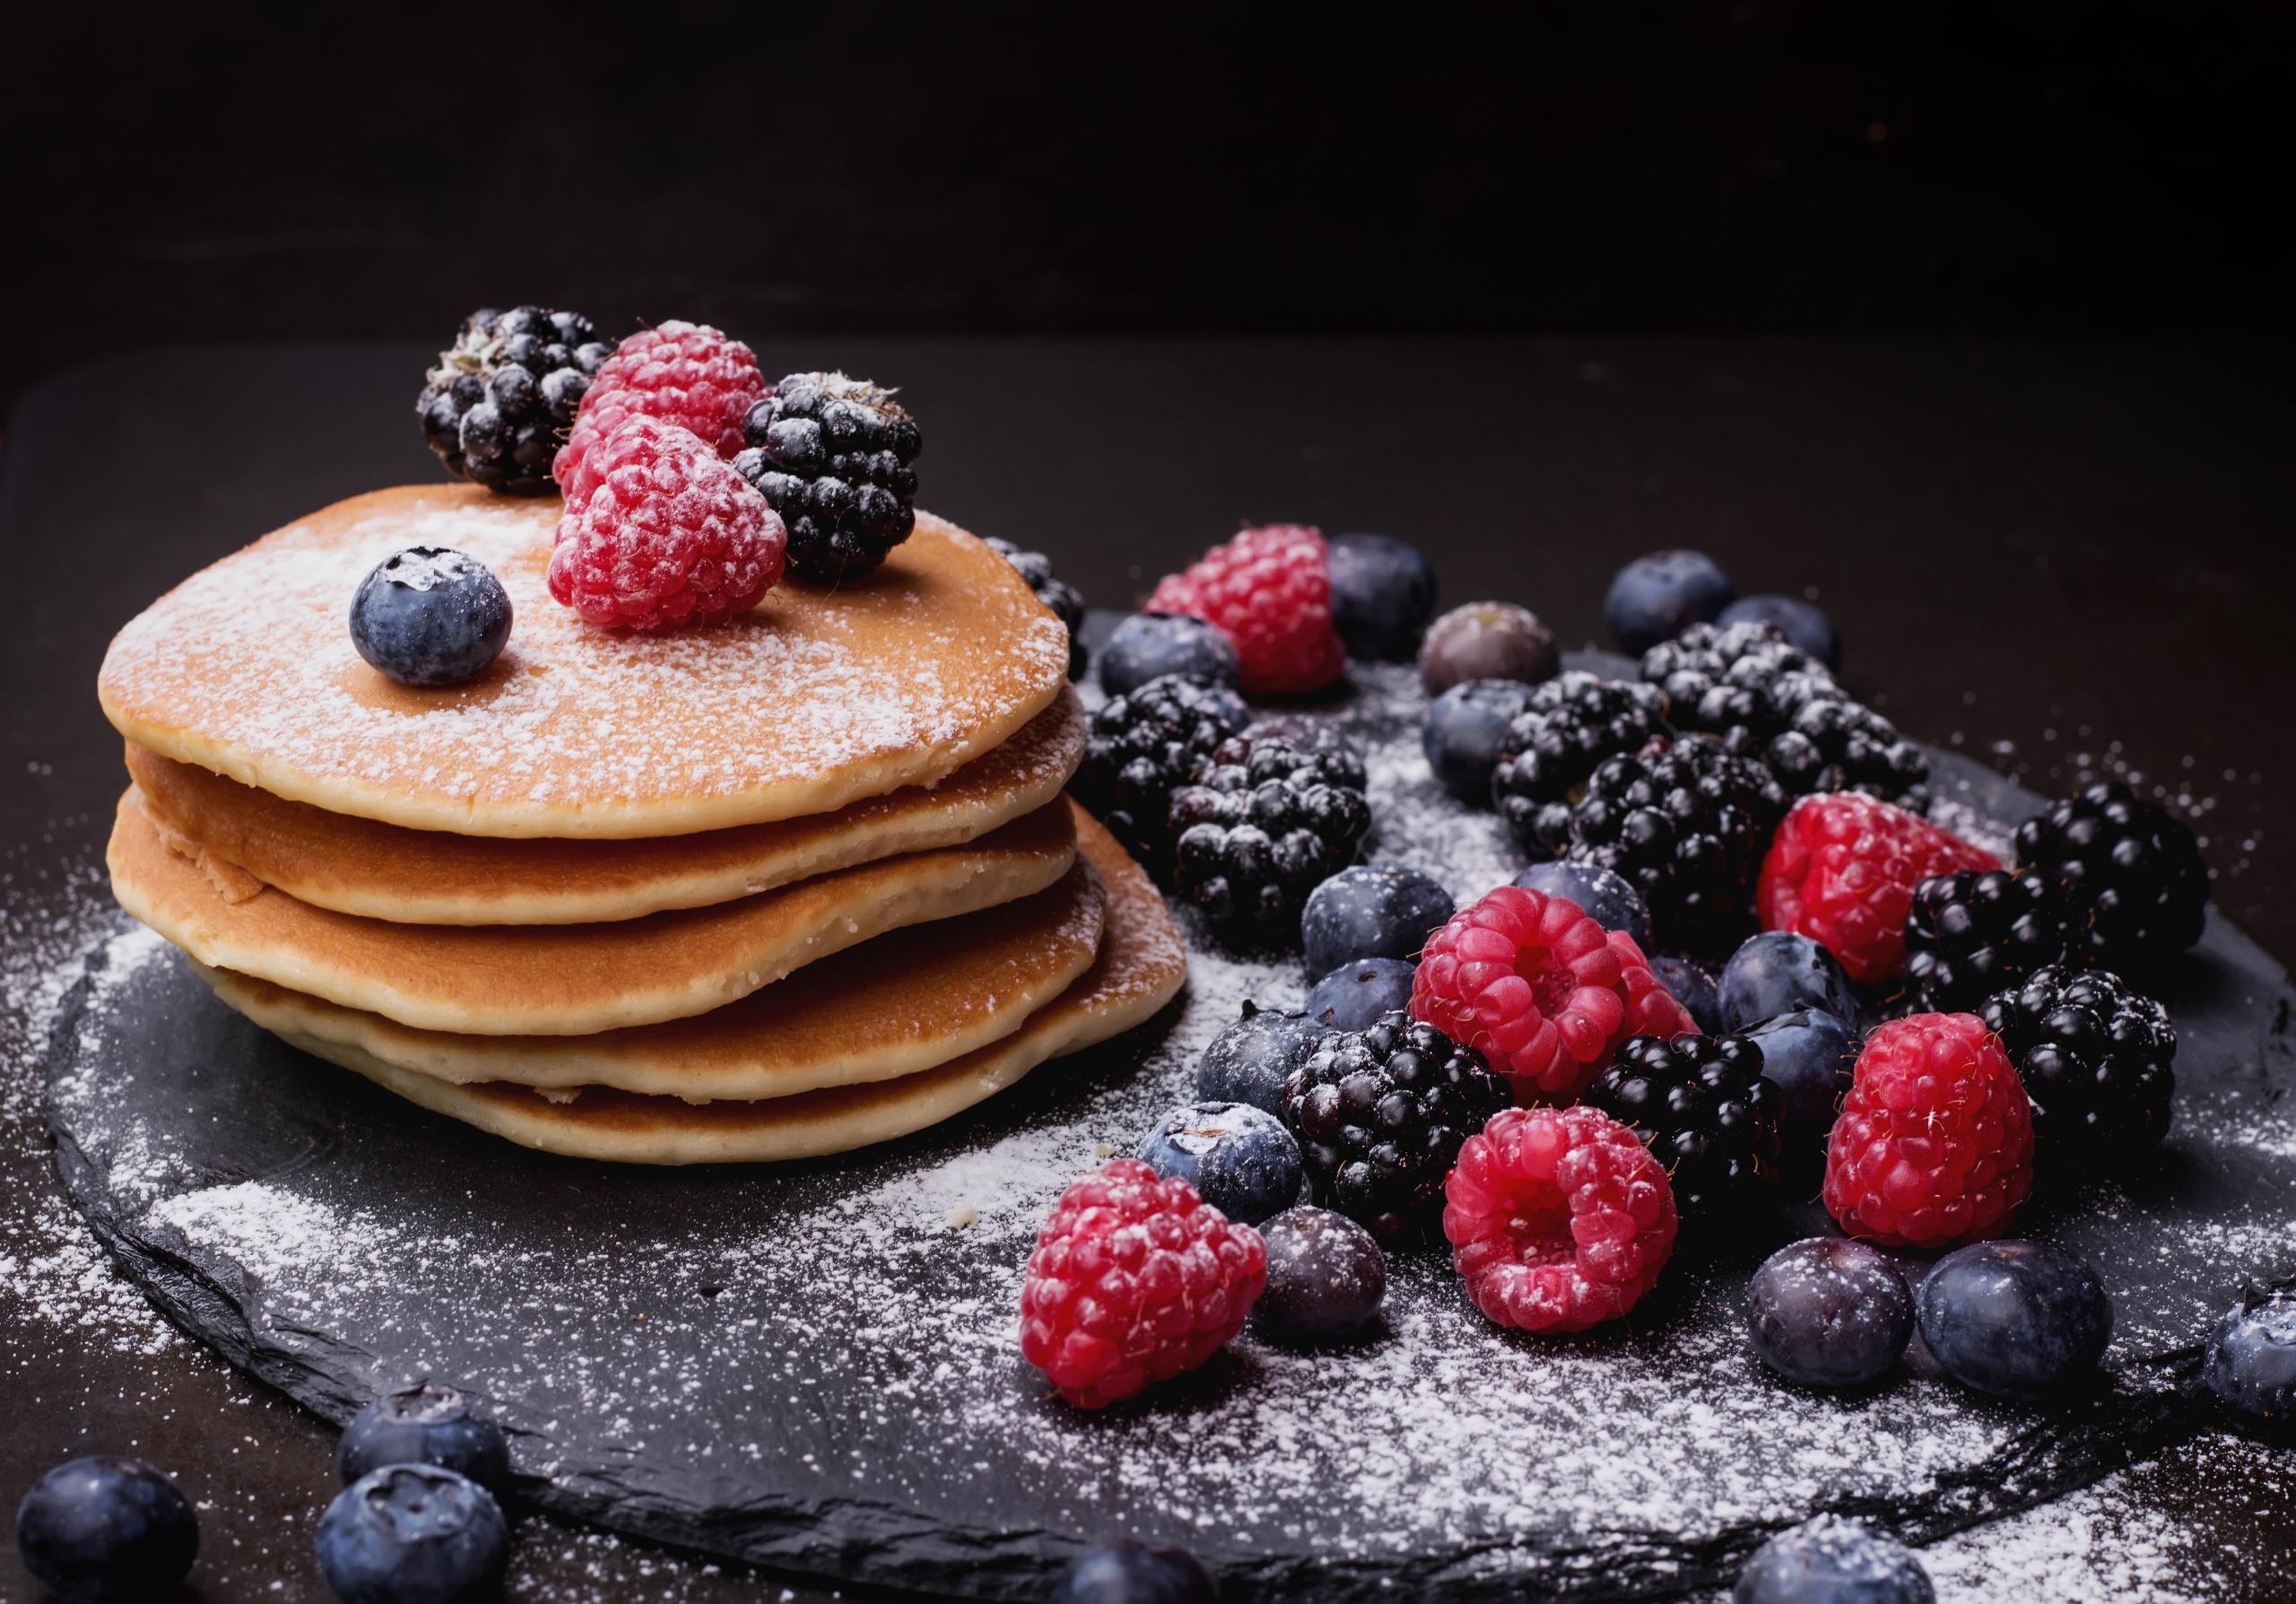 General 2560x1788 pancakes food fruit berries blueberries blackberries